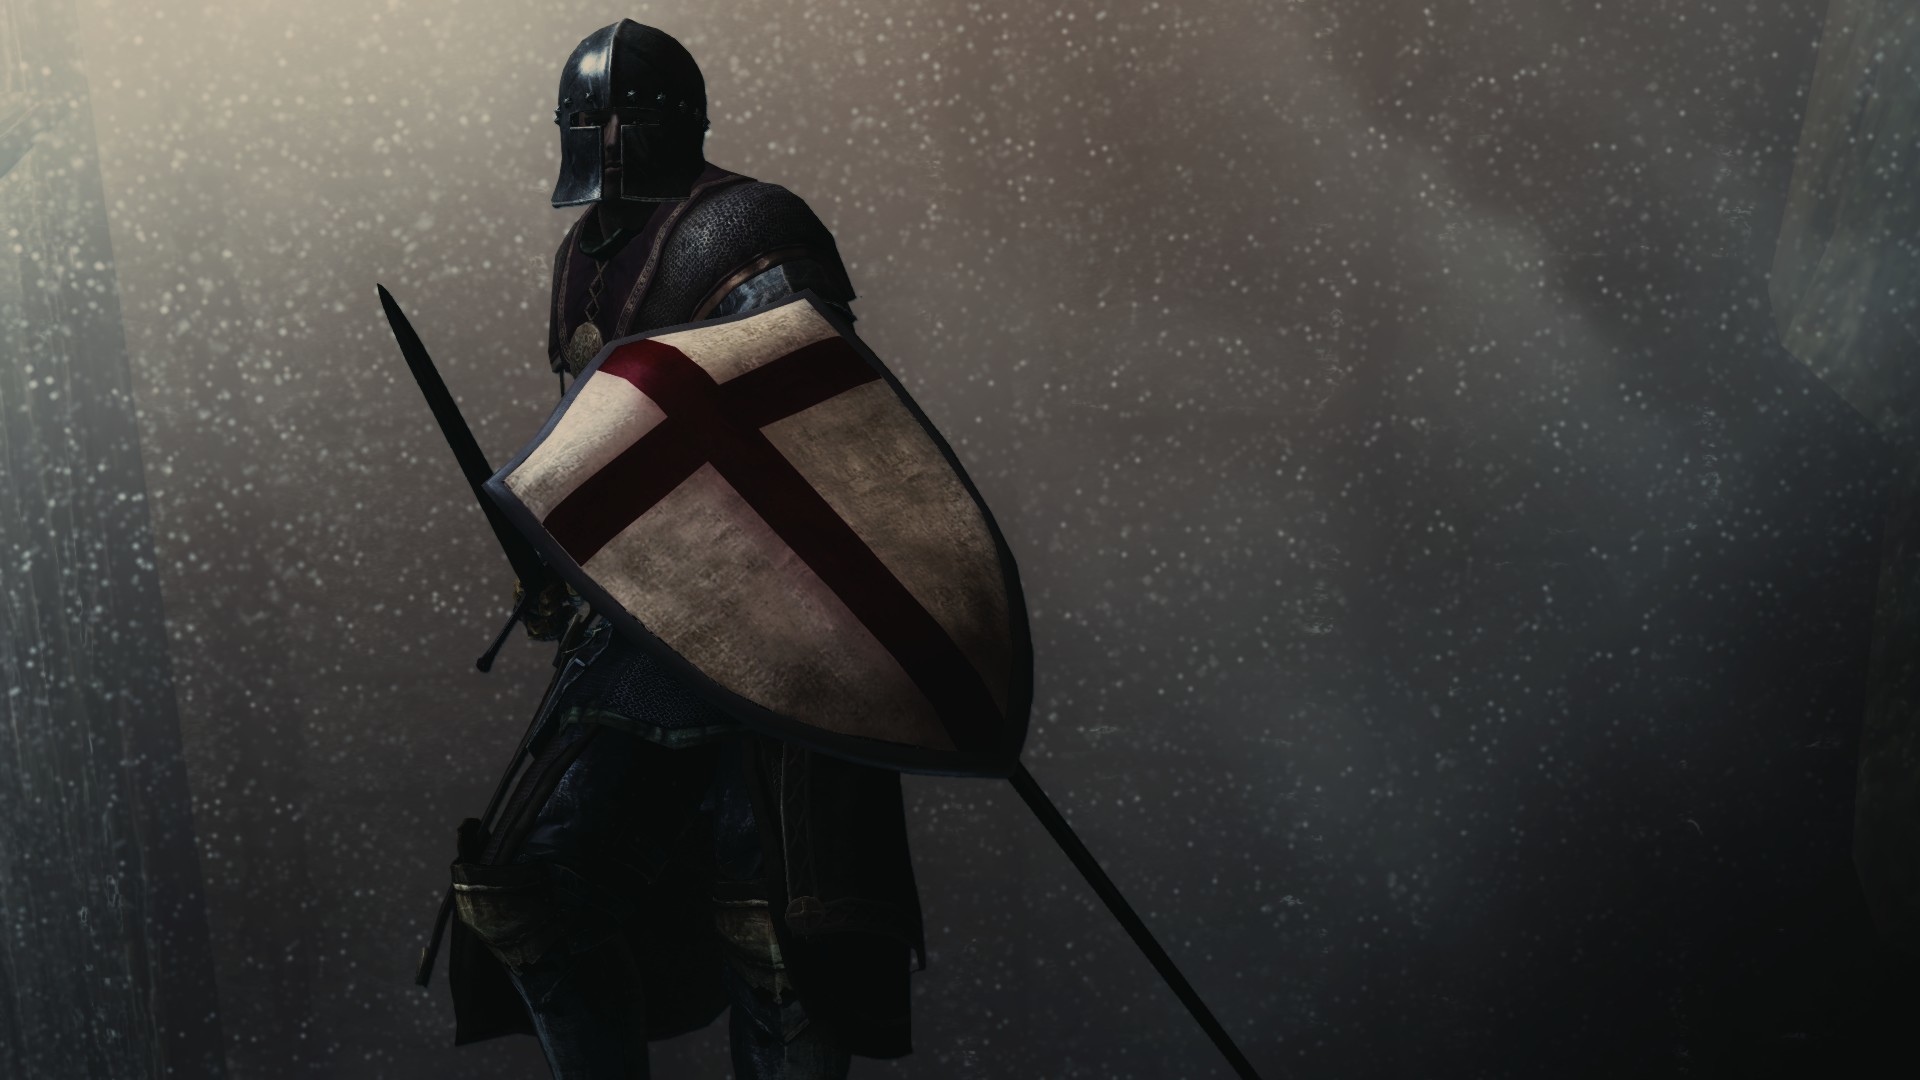 Wallpapers warrior knight helmet on the desktop